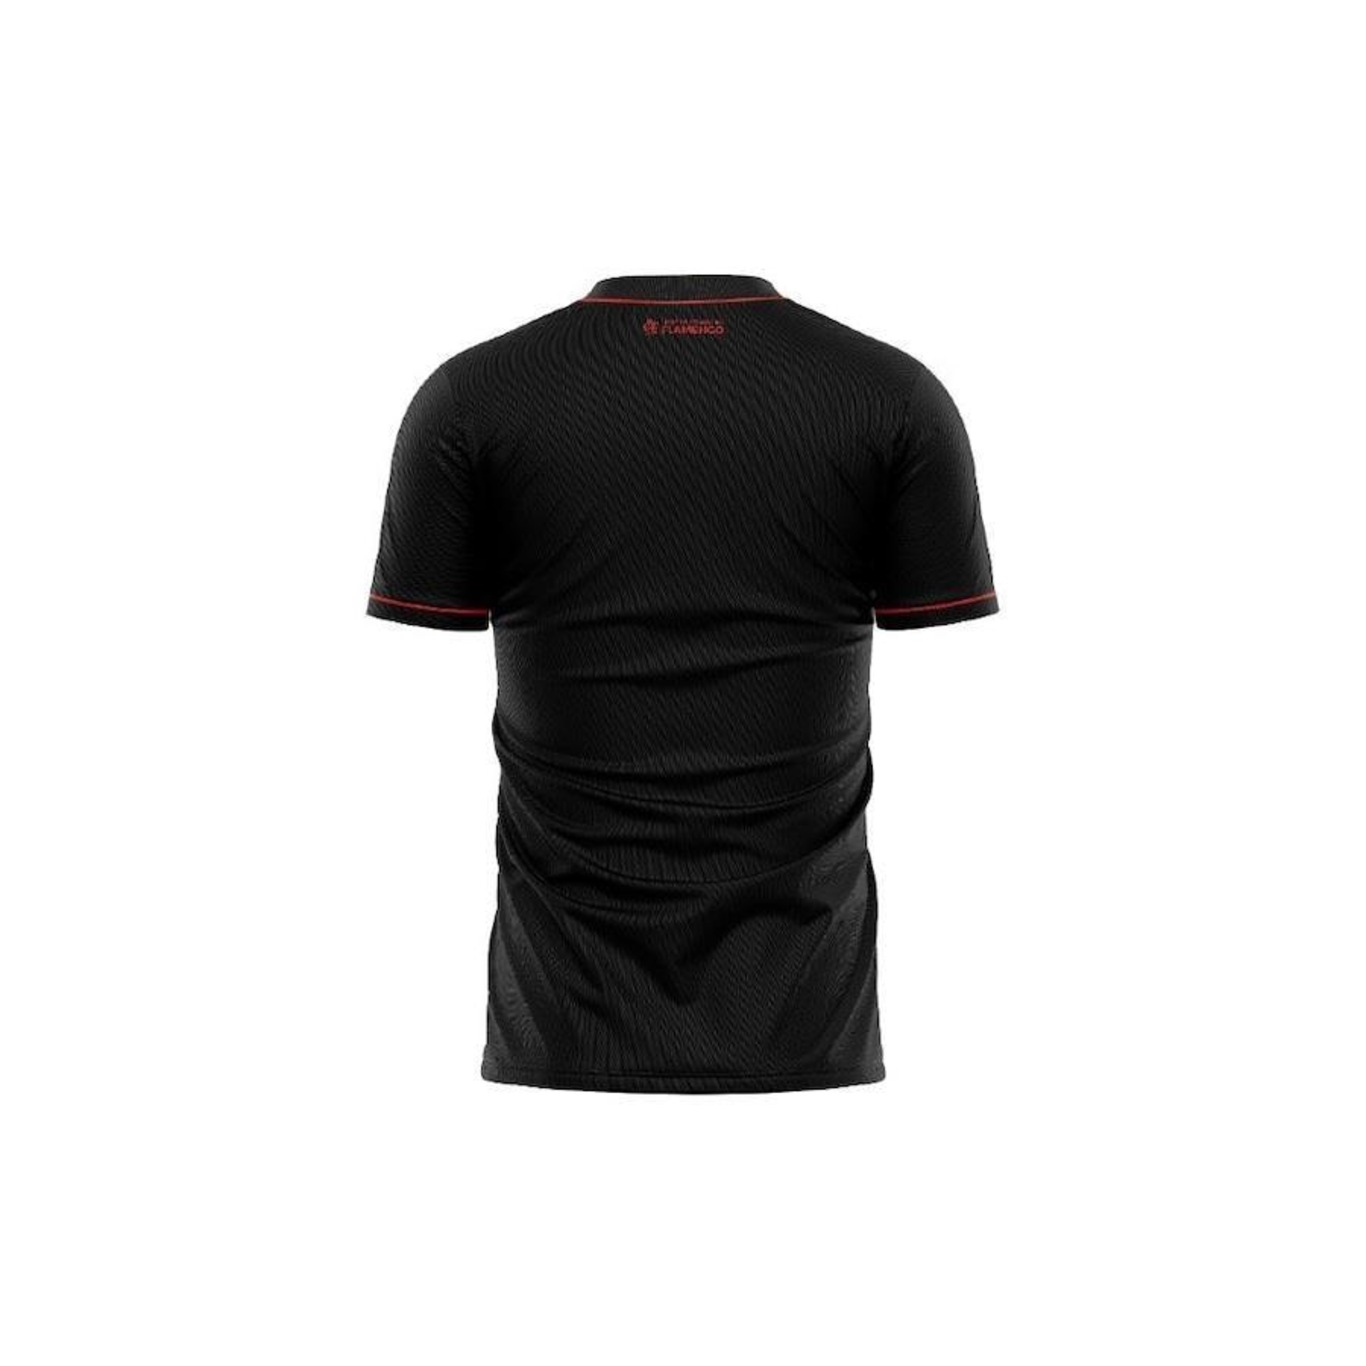 Camiseta do Flamengo FC Rubro Negro Blusa Mengão - Braziline